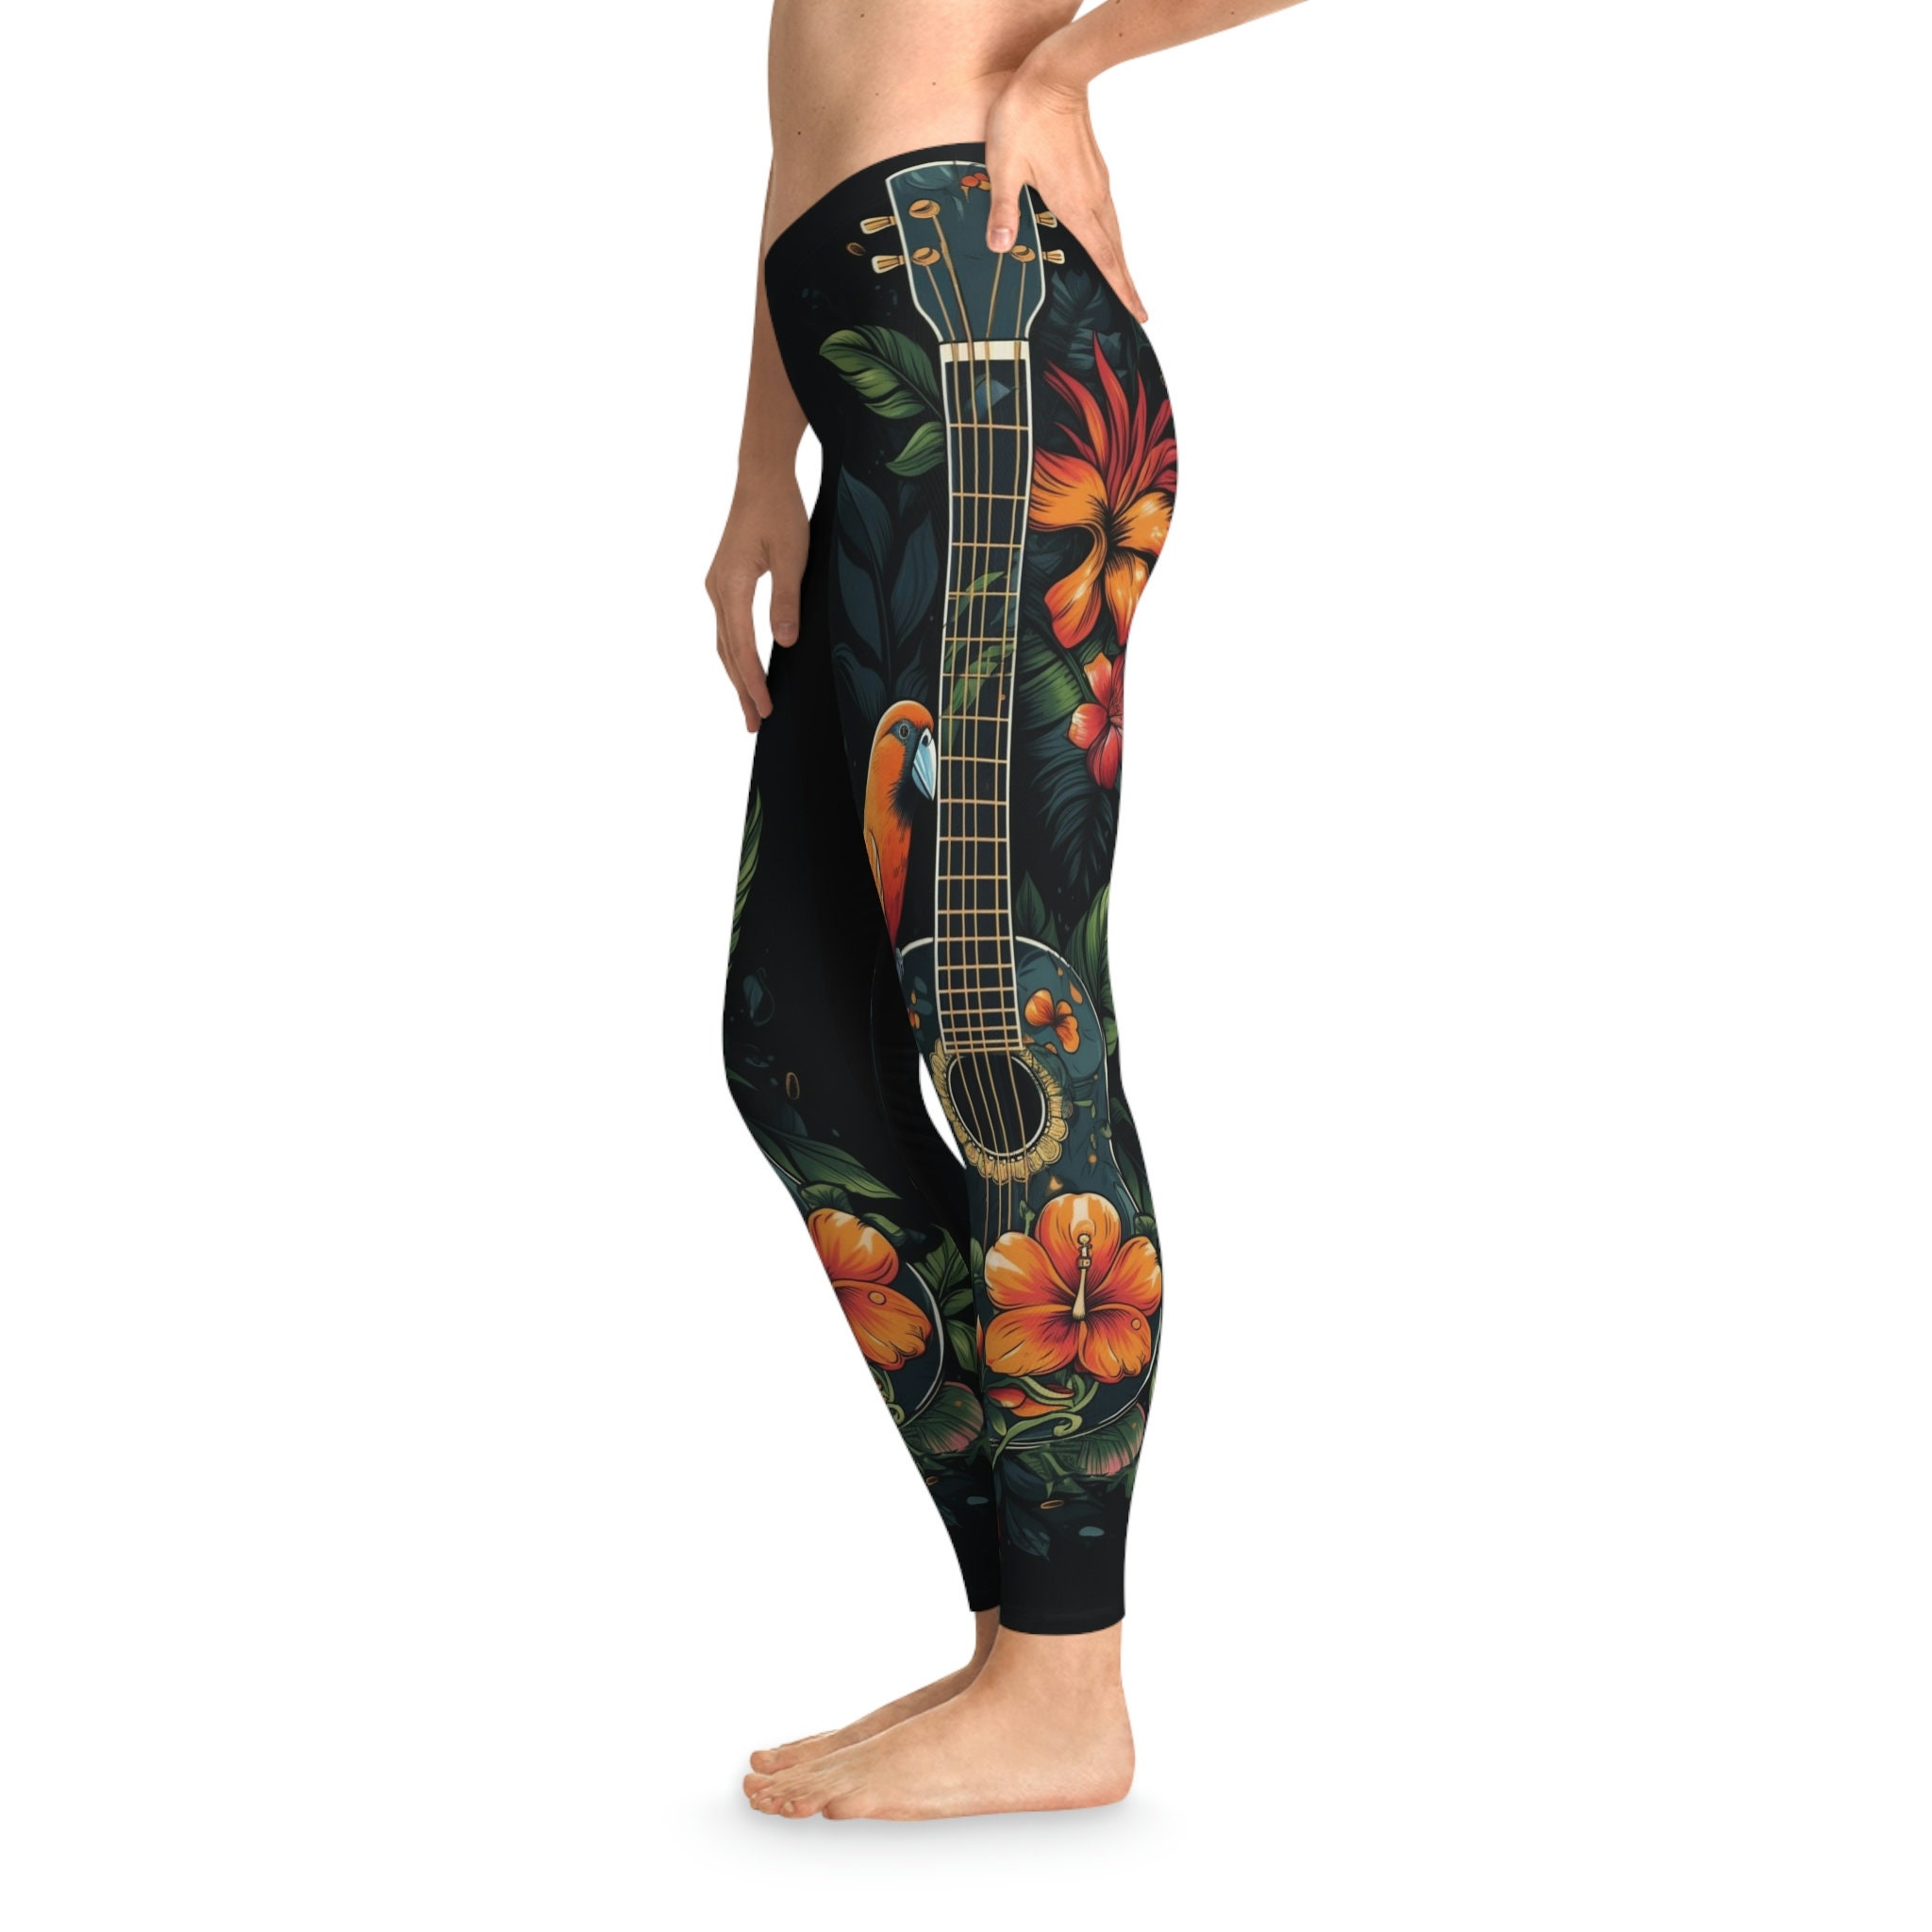 Kapua Ukulele Soft Stretchy Leggings for Women Hippie Clothing, Musician  Clothing, Cottagecore Plus Size Leggings Yoga Pant 